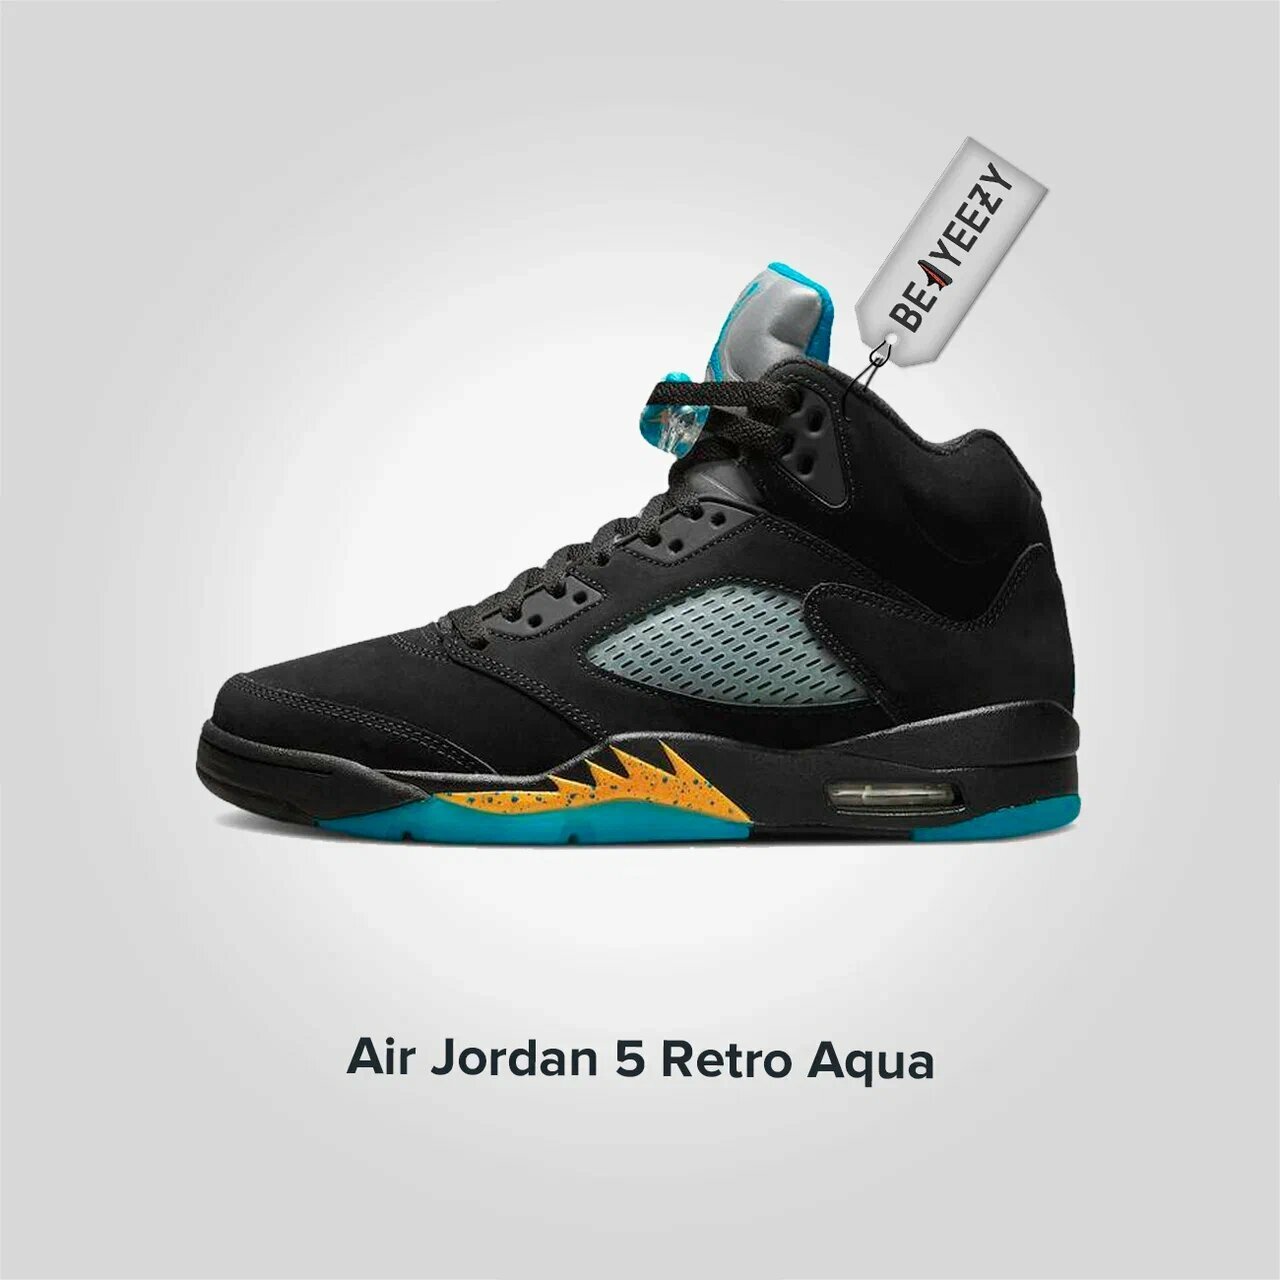 Jordan 5 Retro Aqua